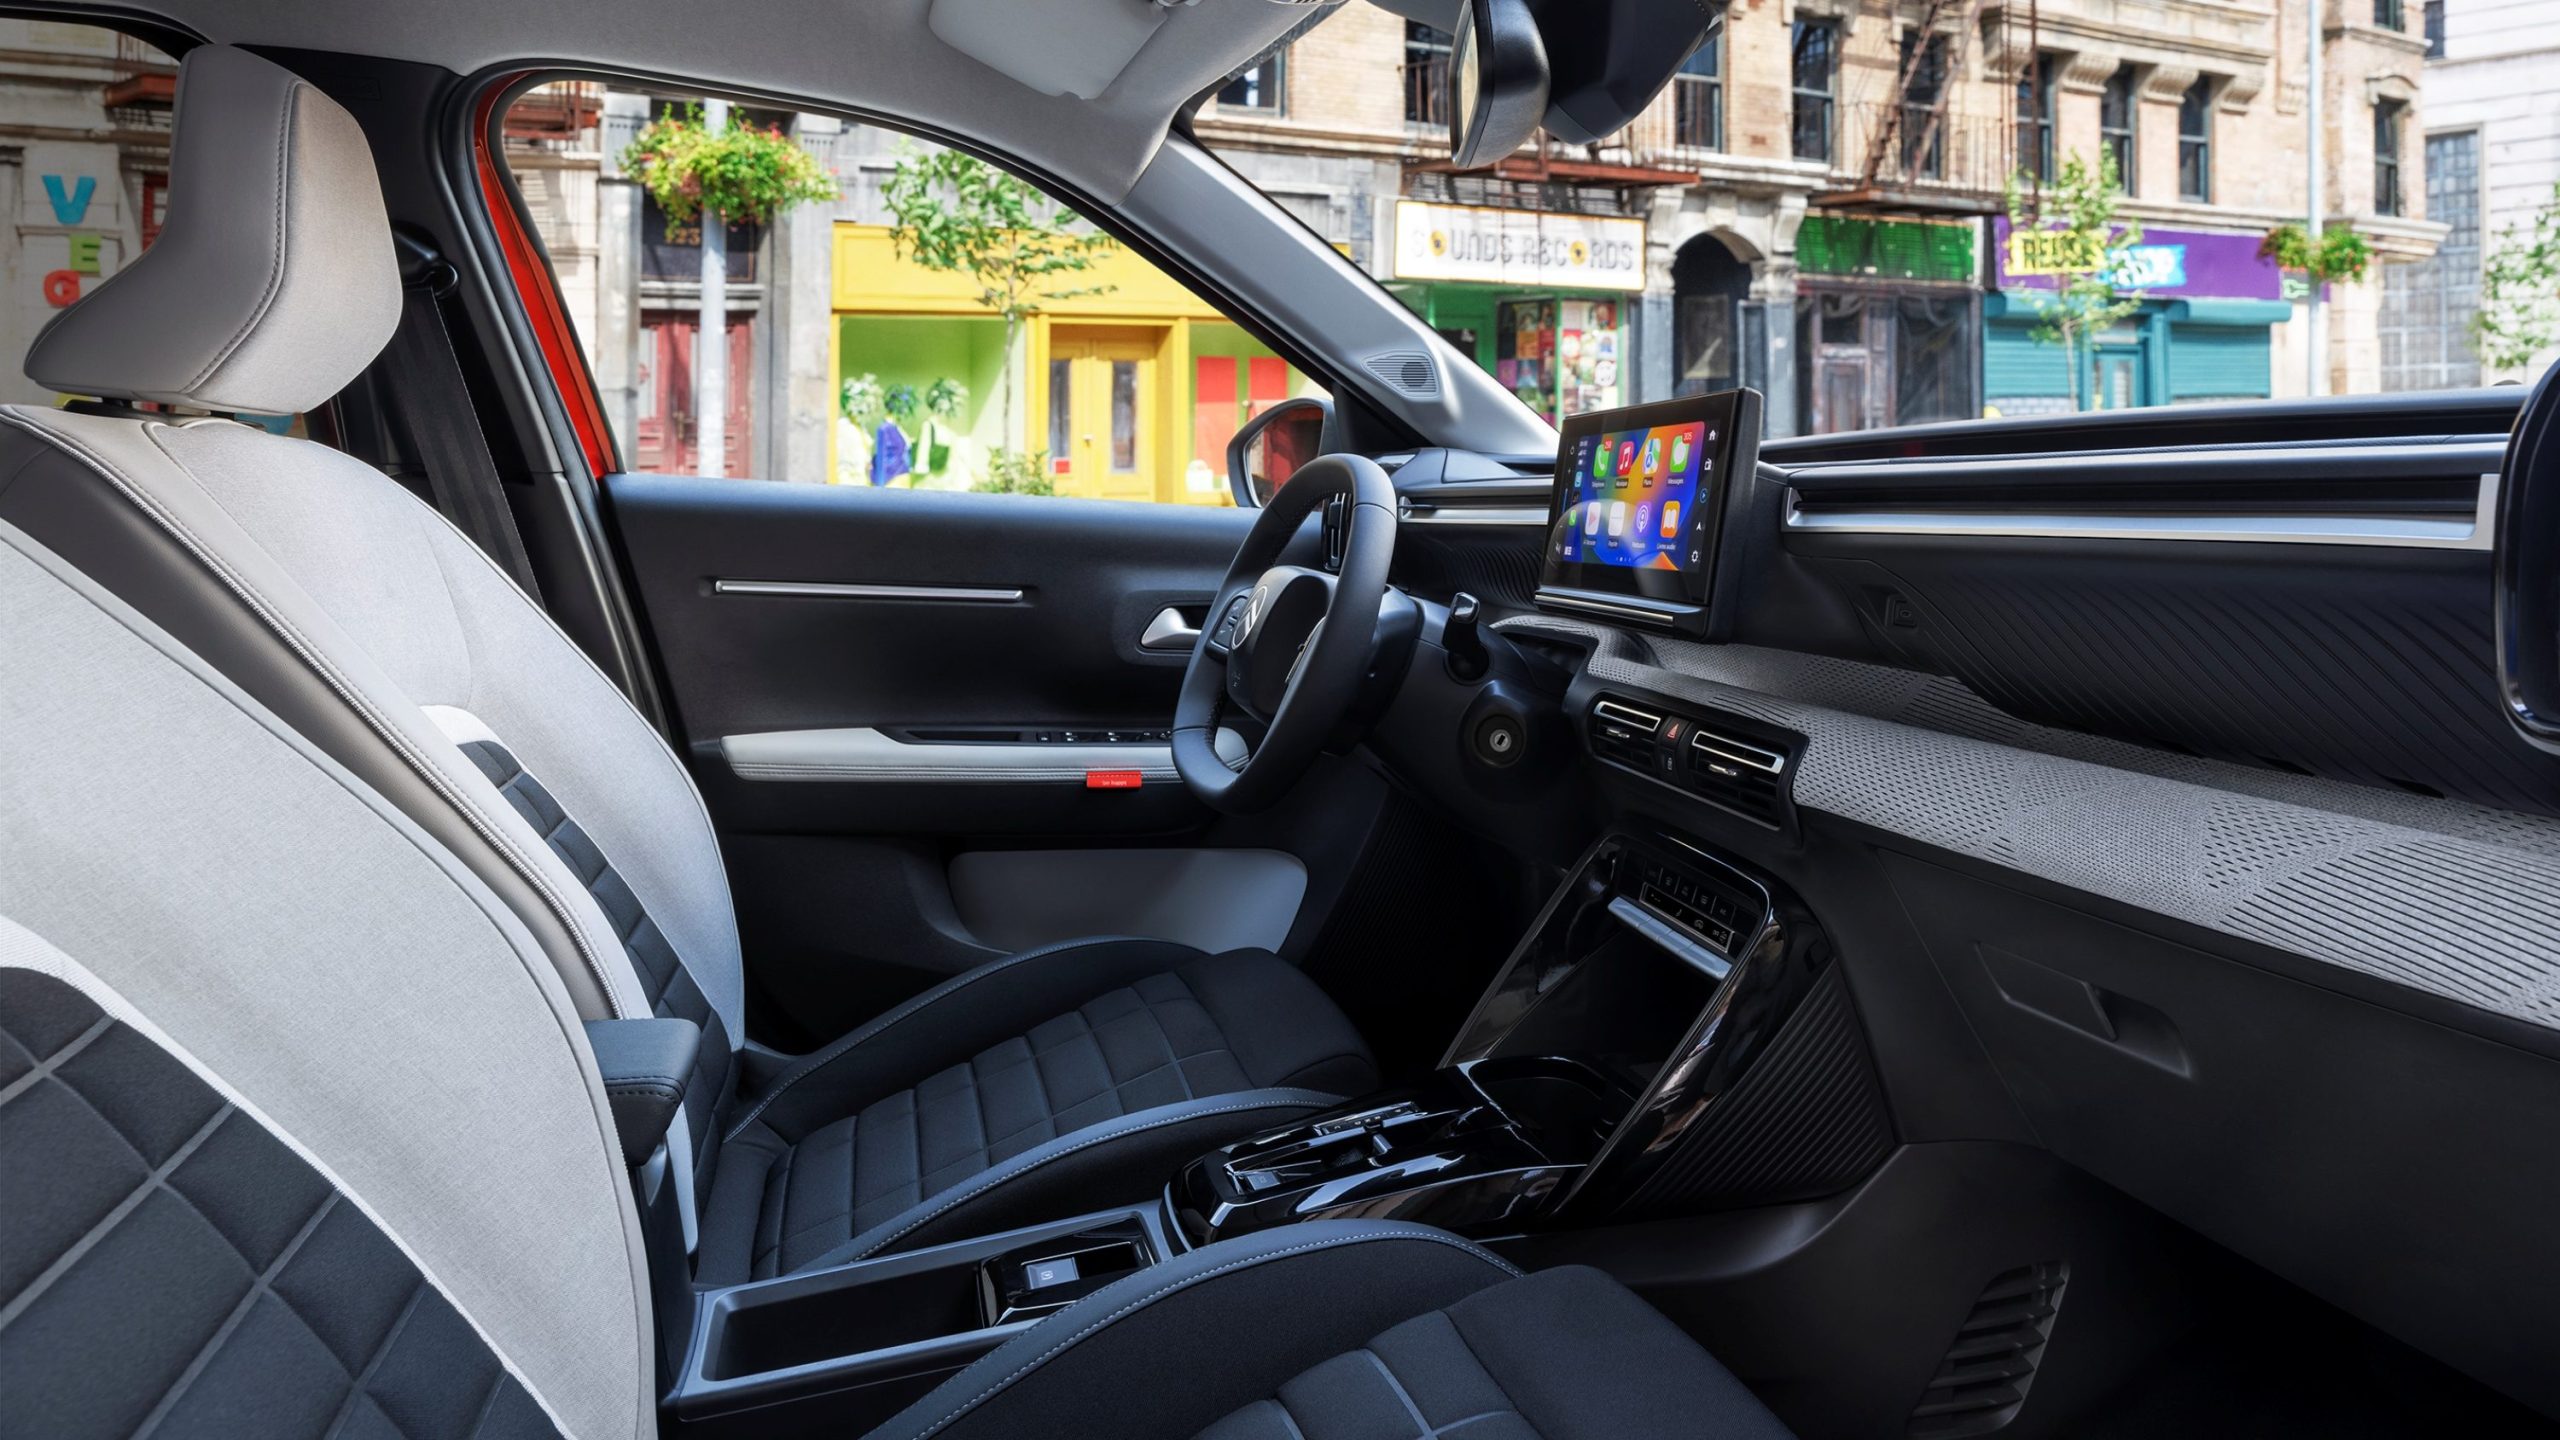 Nur das Nötigste
Der 10,25 Zoll große Bildschirm in der Mitte des Armaturenträgers im  Citroën Ë-C3 kann via Android Auto oder Apple Car Play zur Darstellung von Apps wie Google Maps genutzt werden - da braucht es kein Navigationssystem. Foto: Stellantis